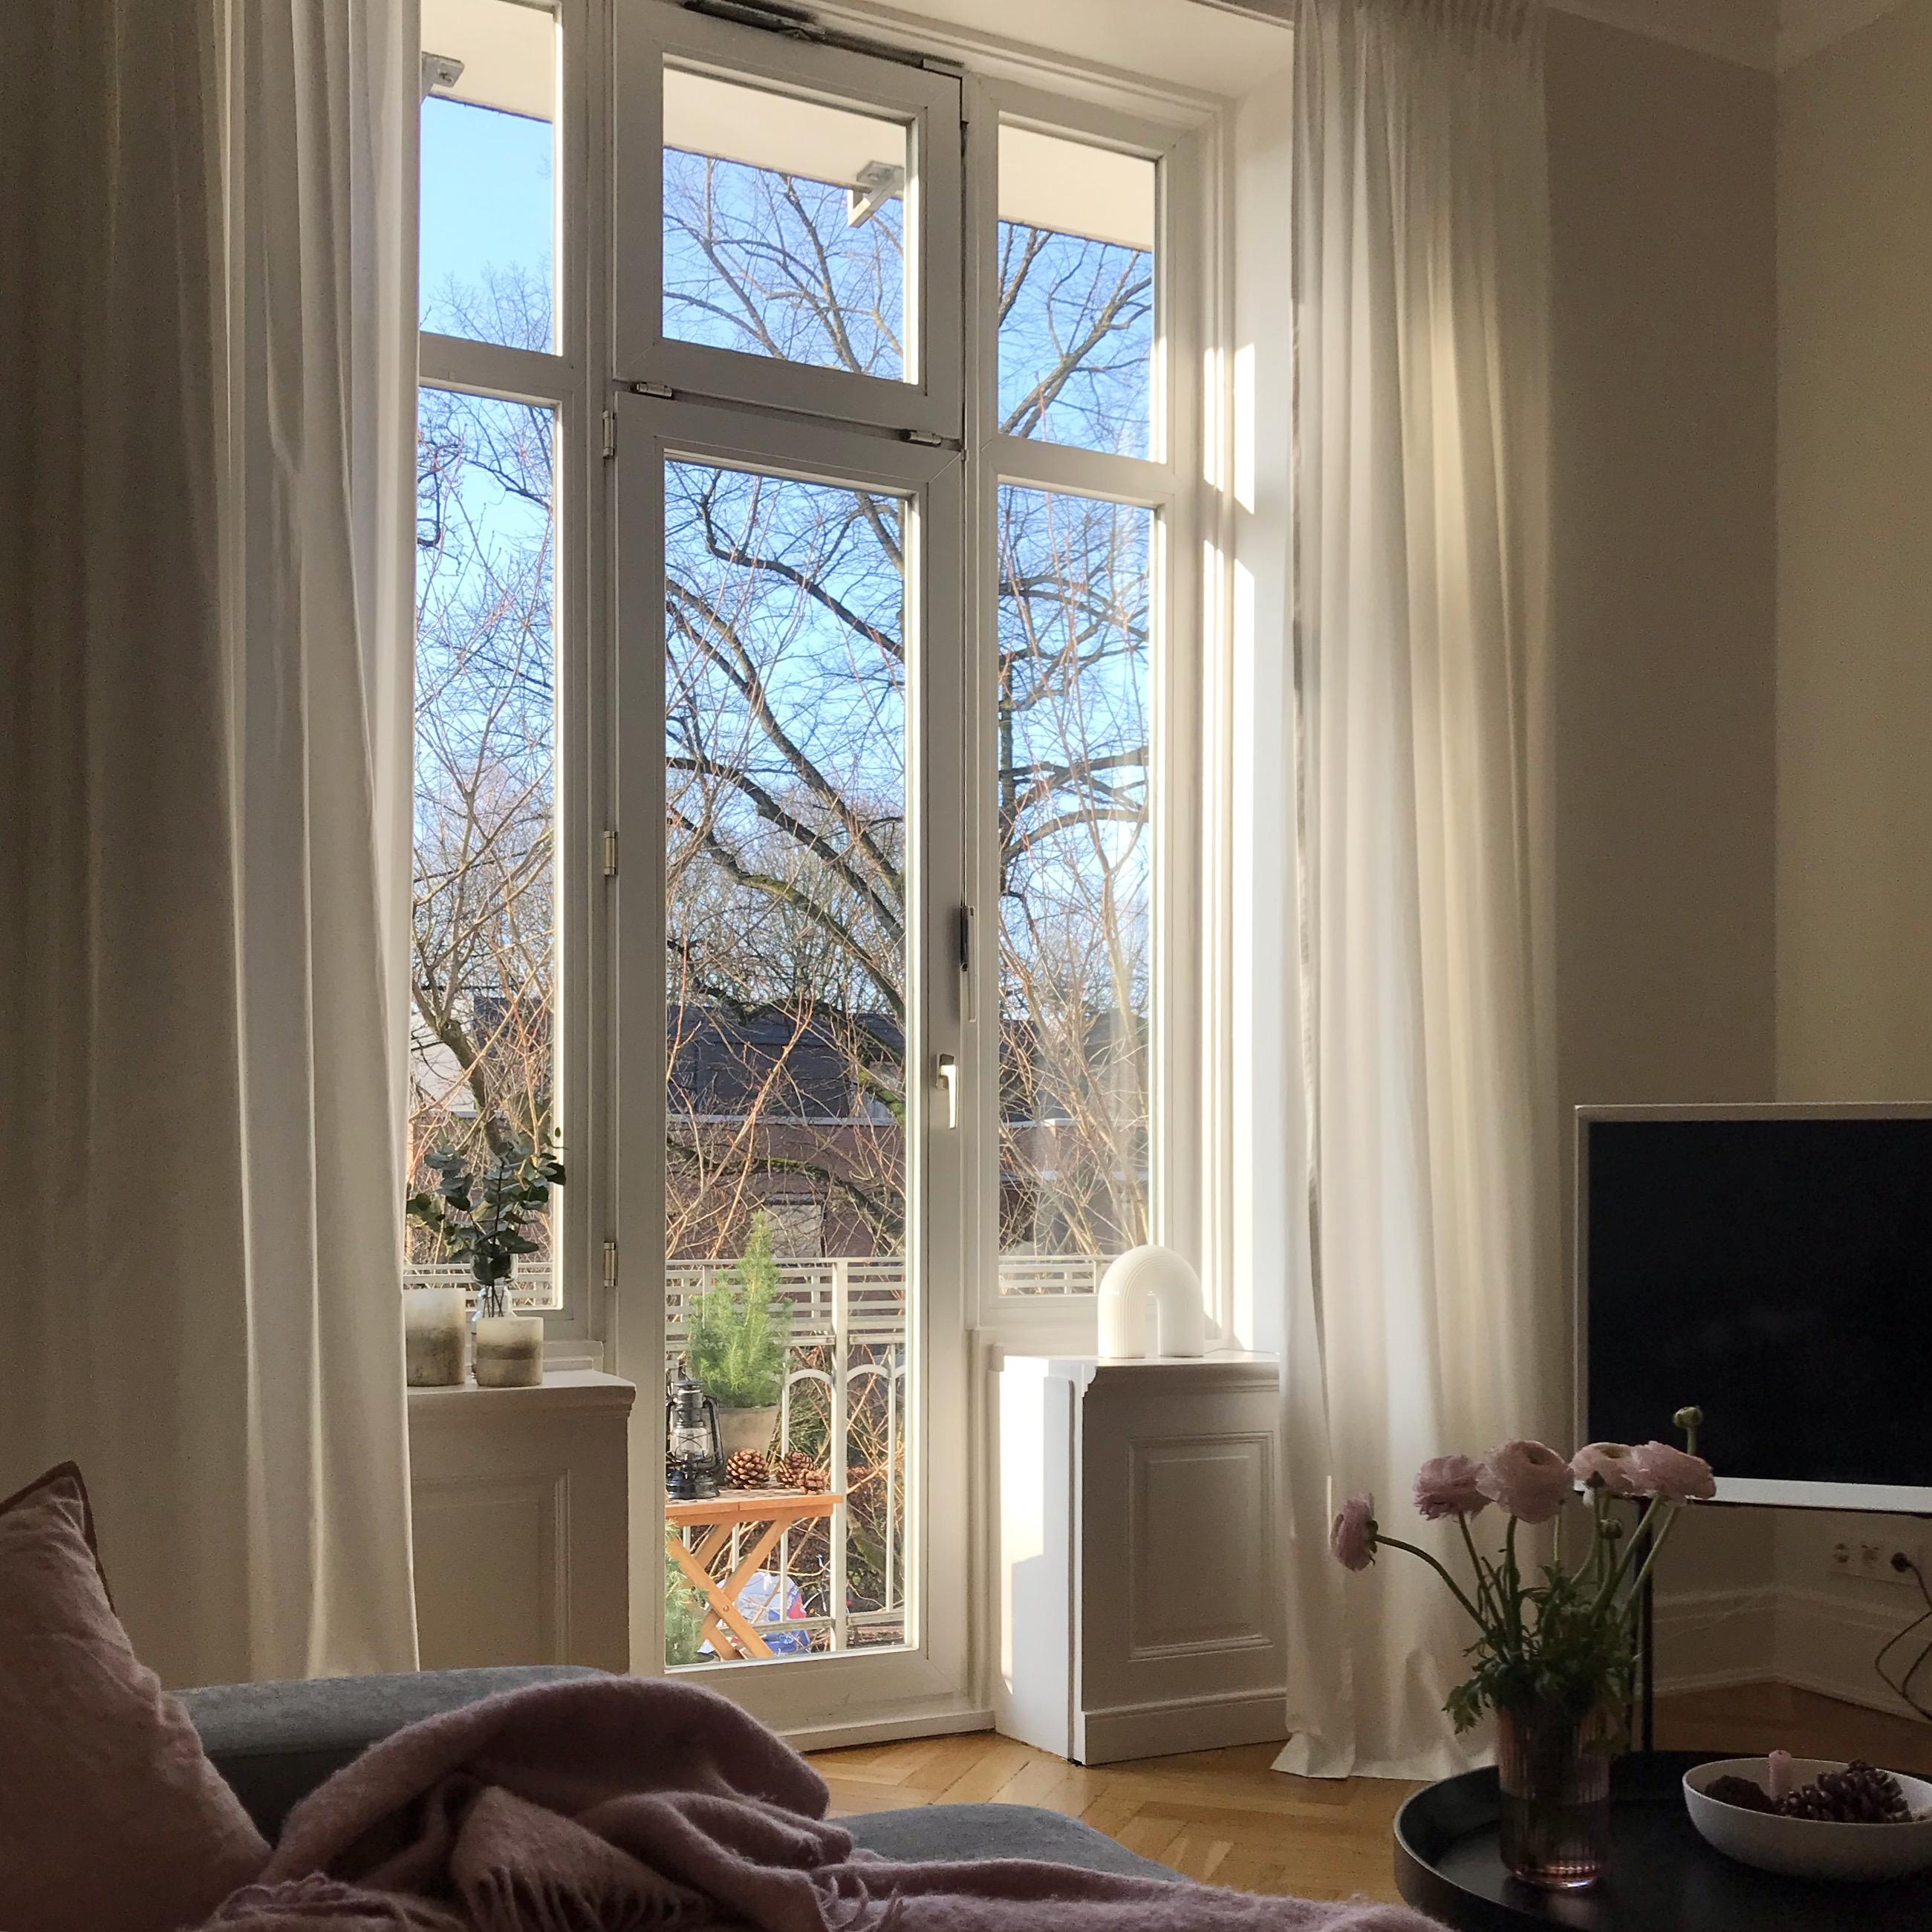 Sonne über Hamburg #windowview #window #bluesky #sun #interior #living #couchstyle #couchliebt